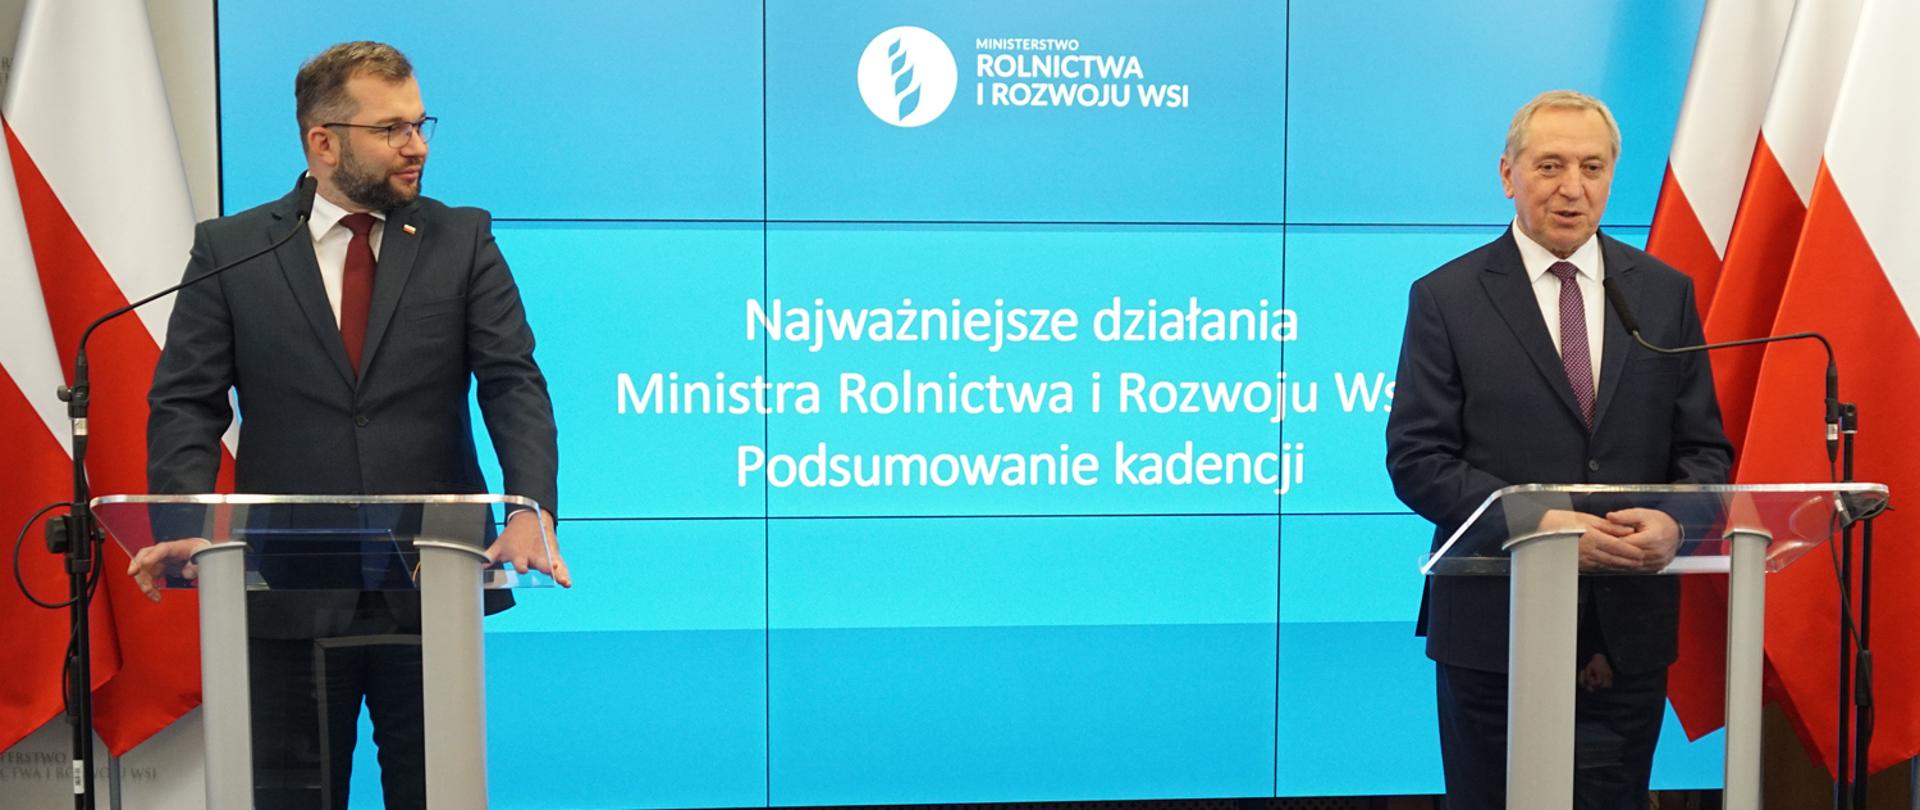 Minister Grzegorz Puda wraz z nowo powołanym wicepremierem, ministrem rolnictwa i rozwoju wsi Henrykiem Kowalczykiem, podczas konferencji prasowej.